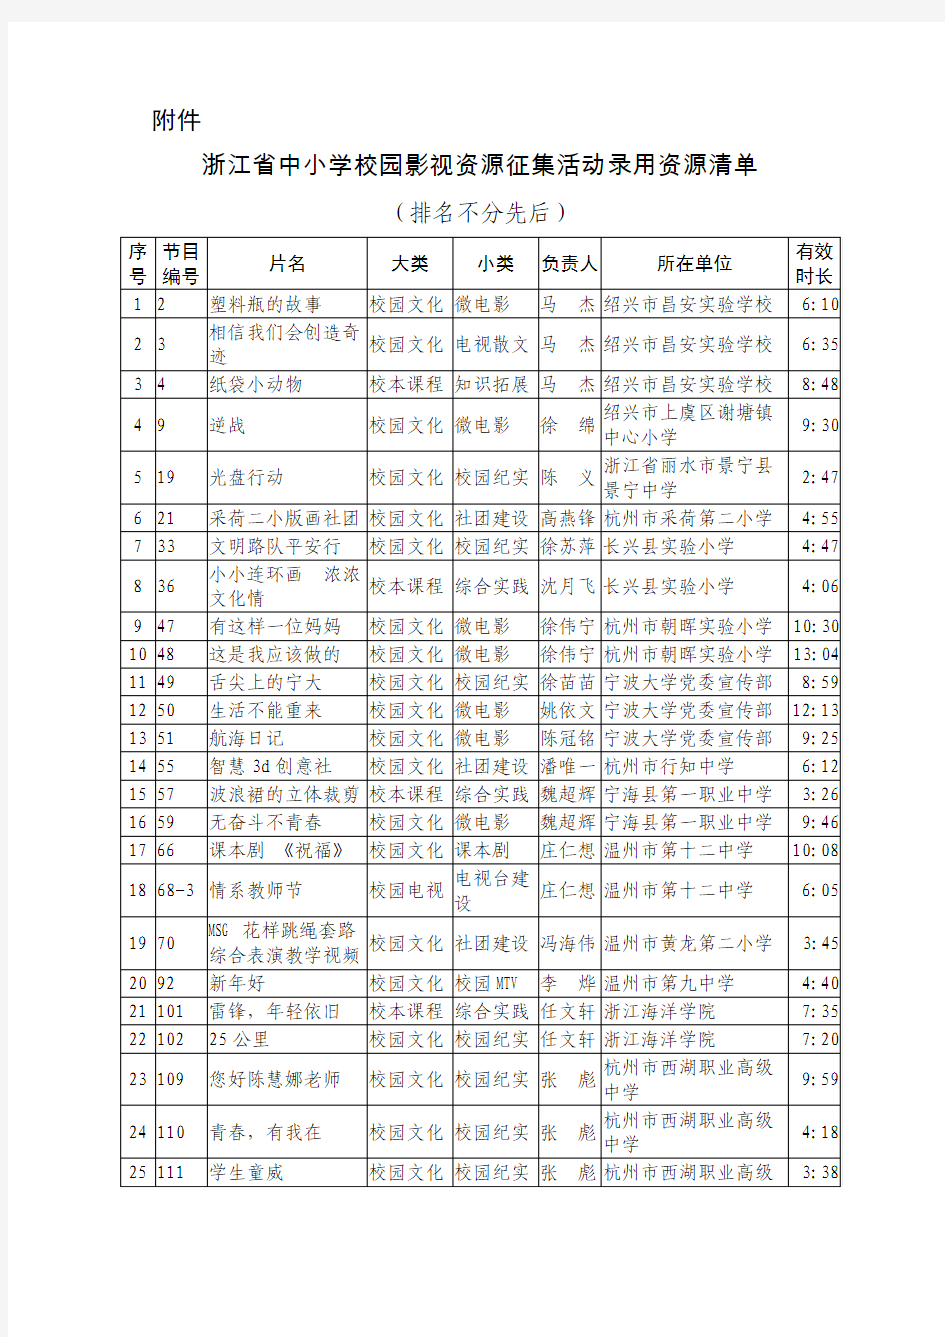 浙江省中小学校园影视资源征集活动录用资源清单